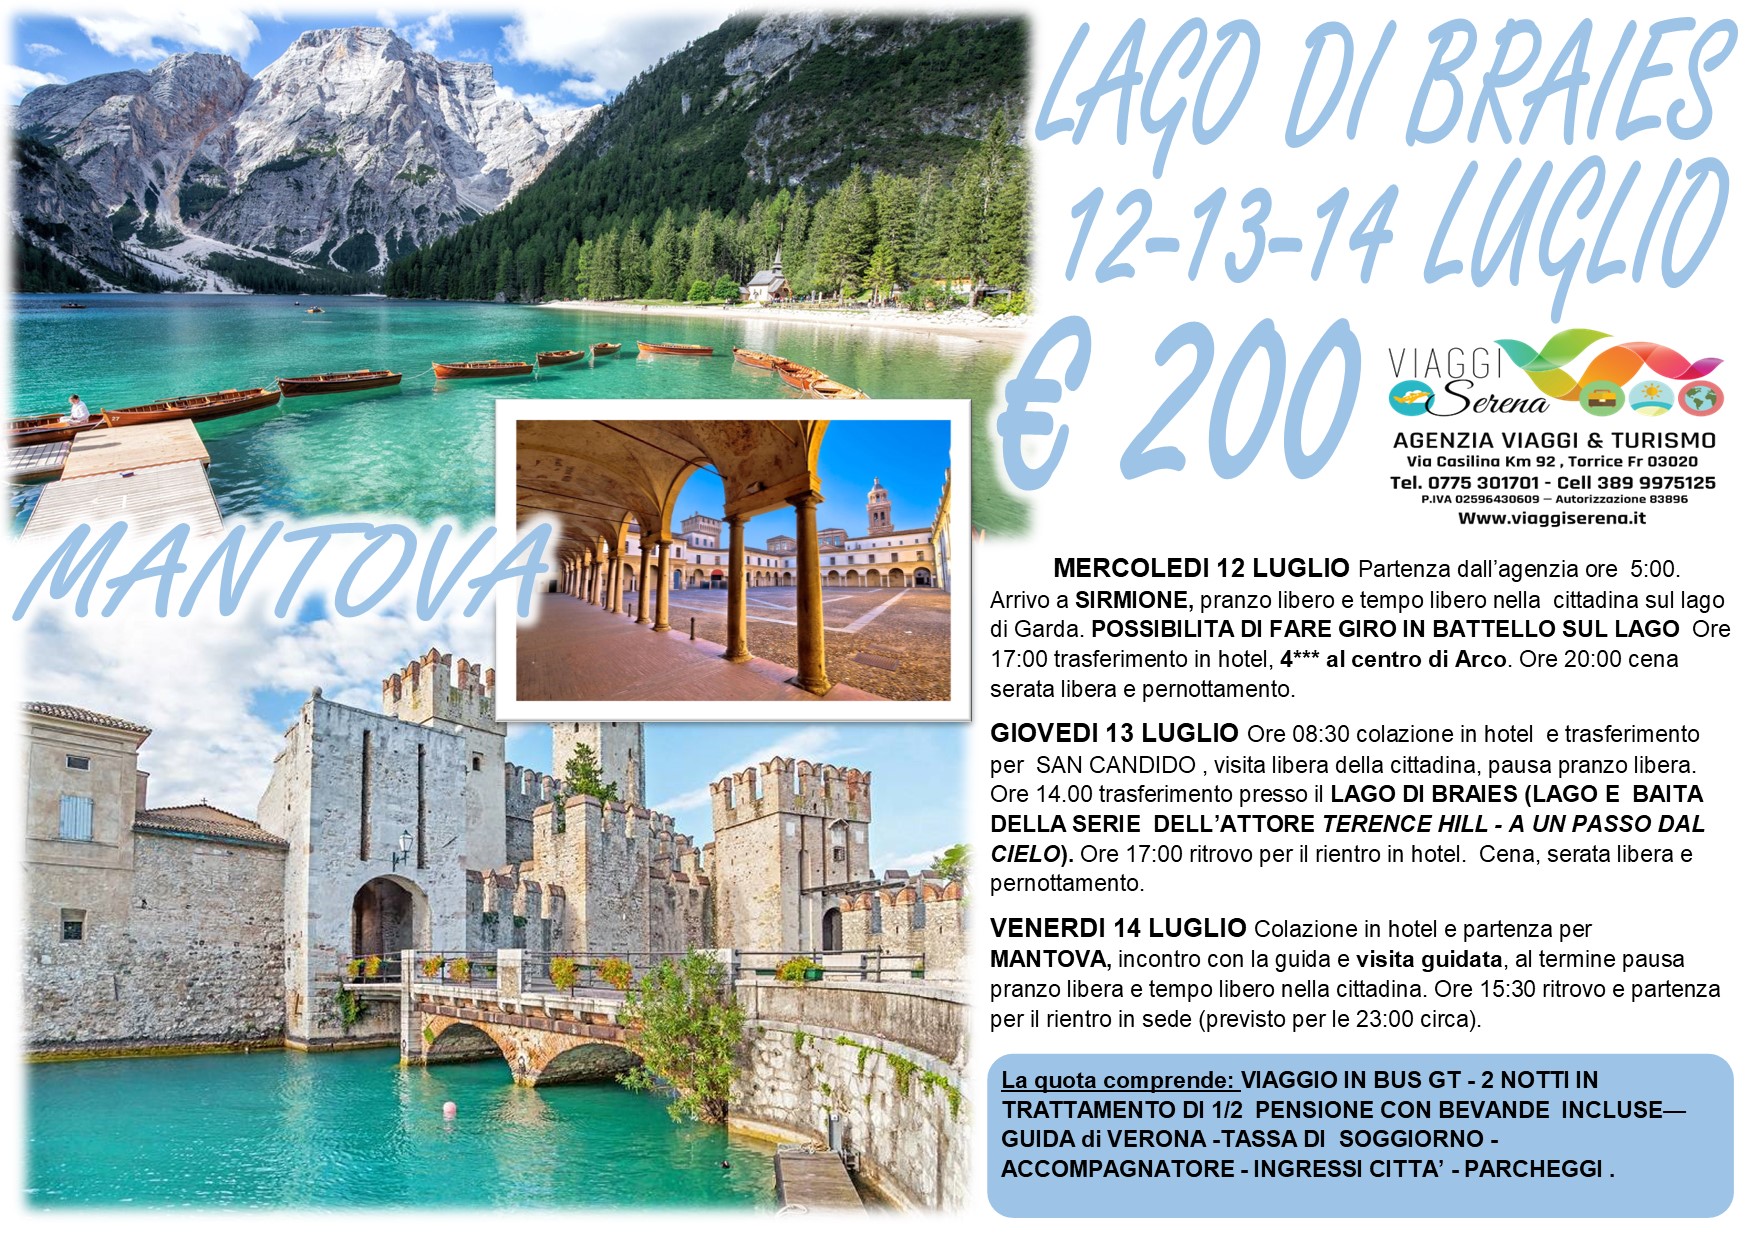 Viaggi di Gruppo: Riva del Garda, Lago di Braies , San Candido & Mantova 12-13-14 Luglio € 200,00